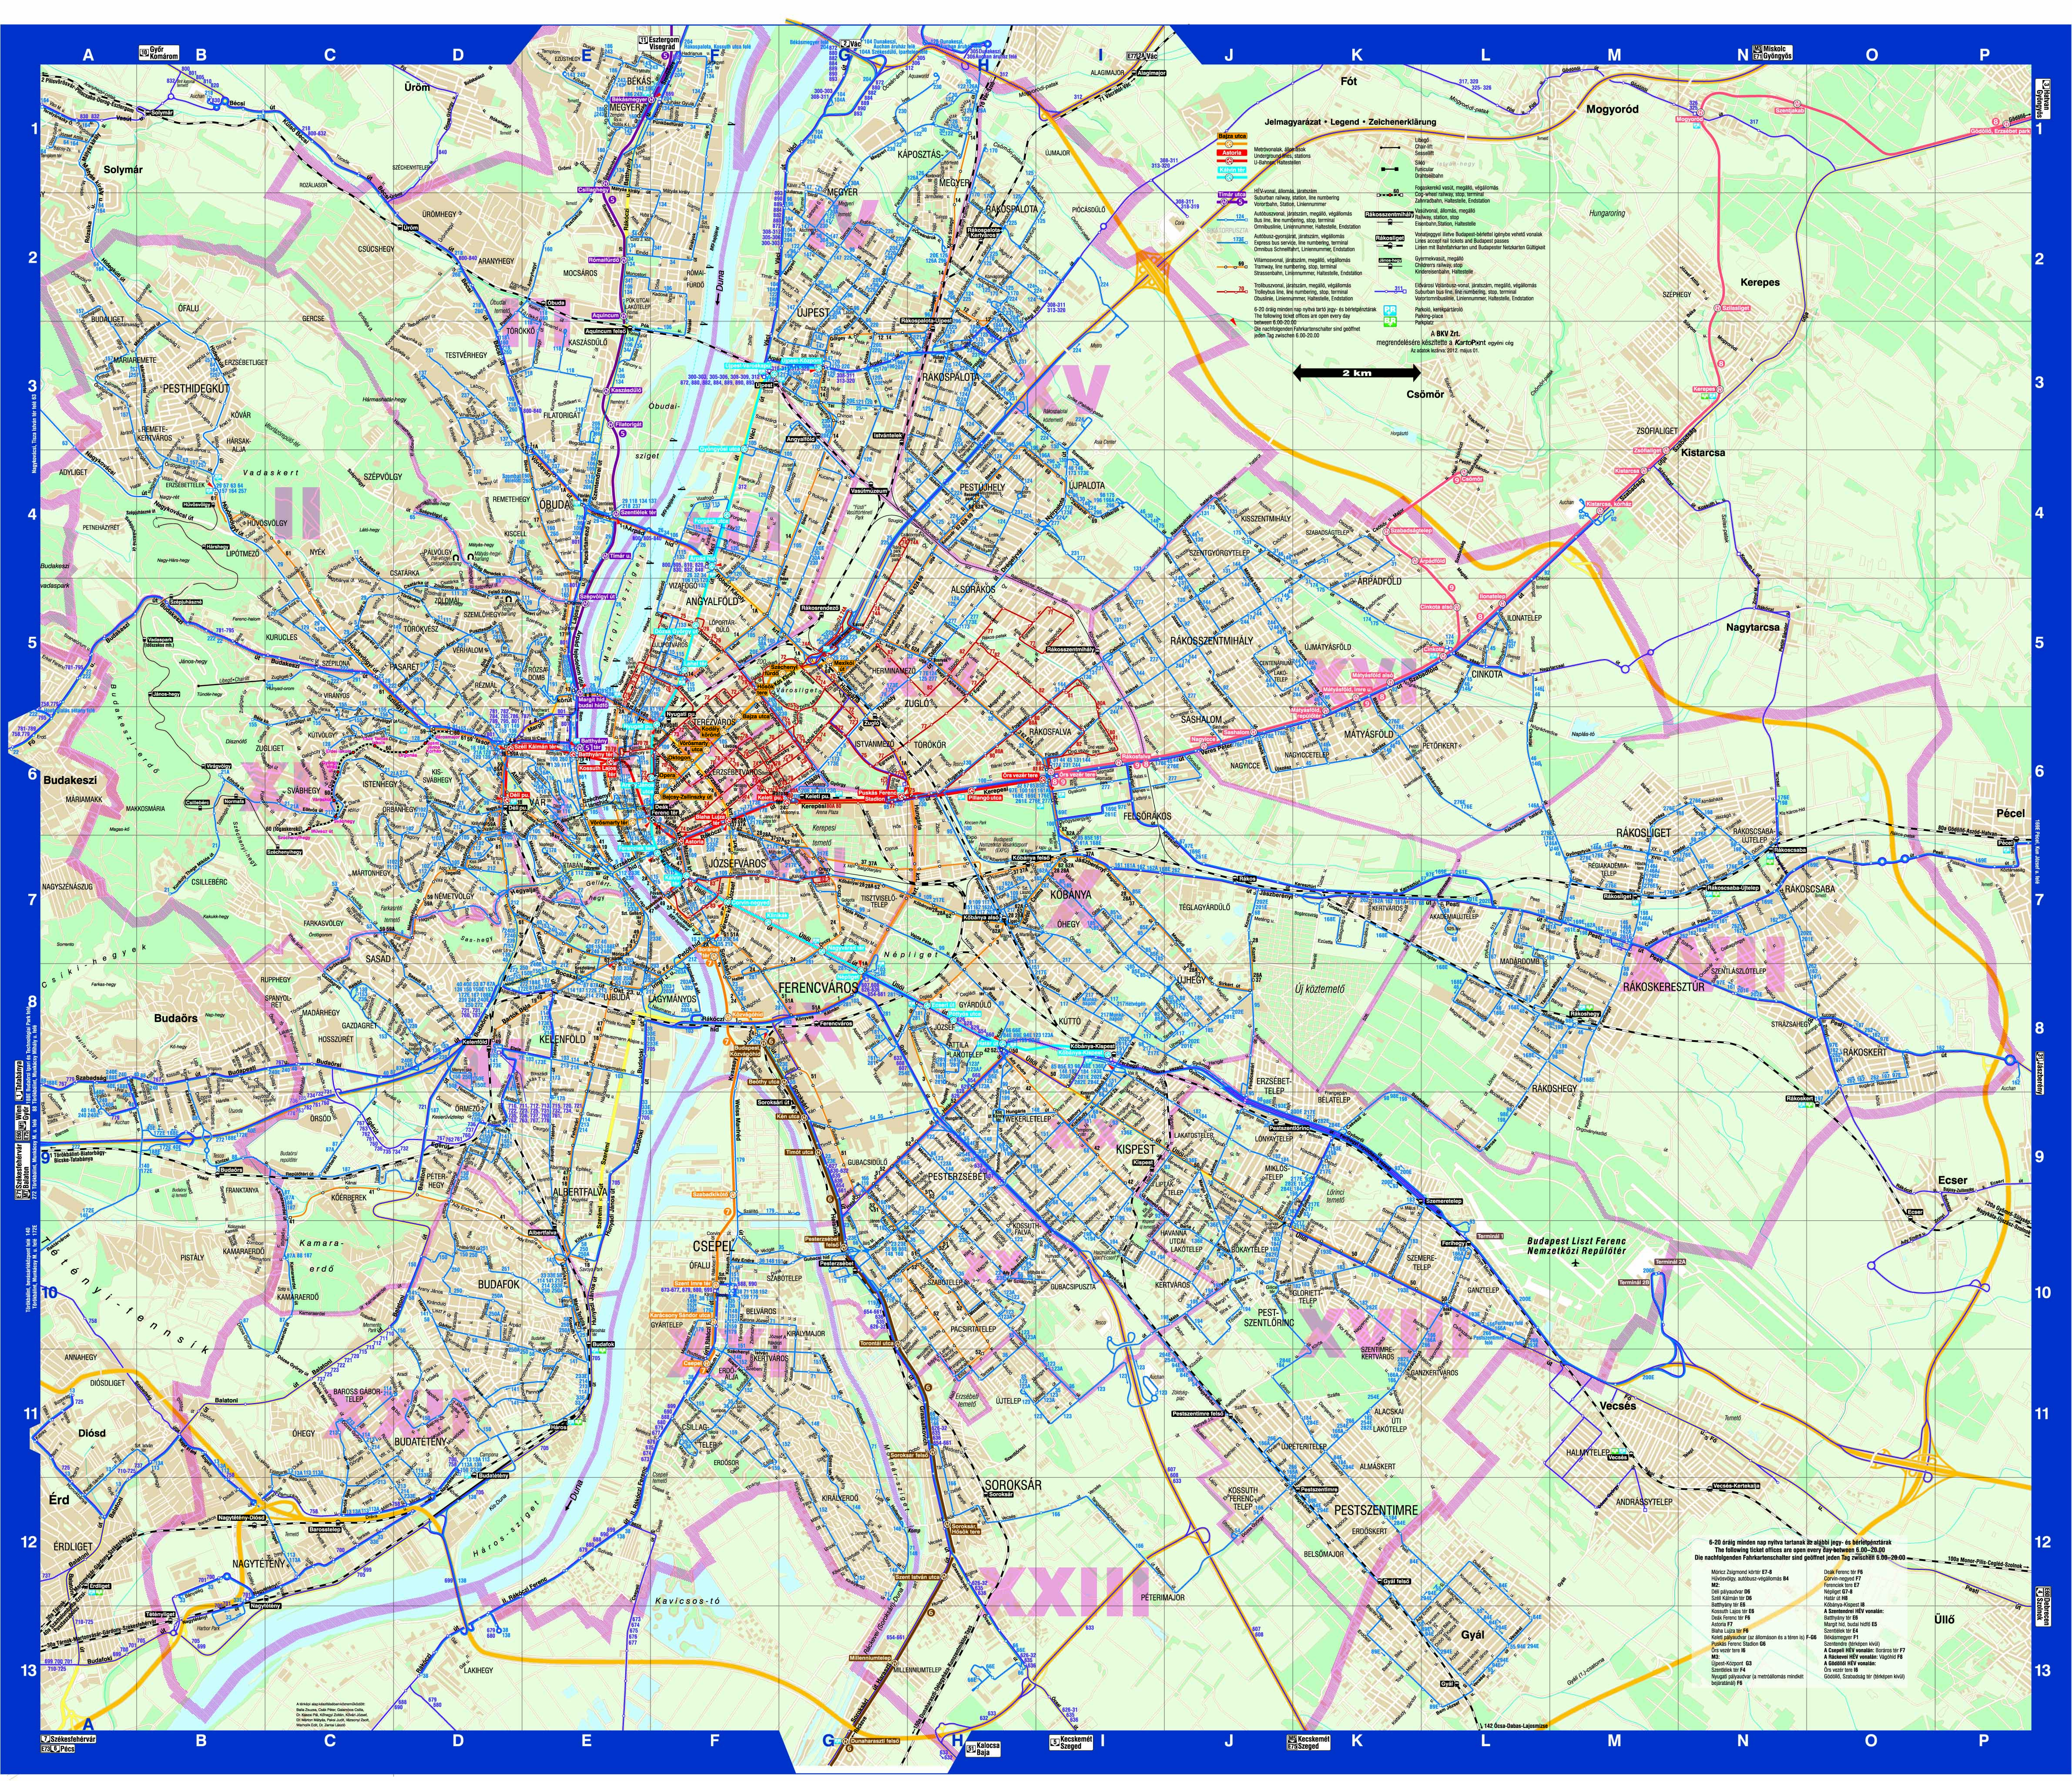 budapest térkép bkv járatok Budapest közösségi közlekekedésének utasterheltsége budapest térkép bkv járatok